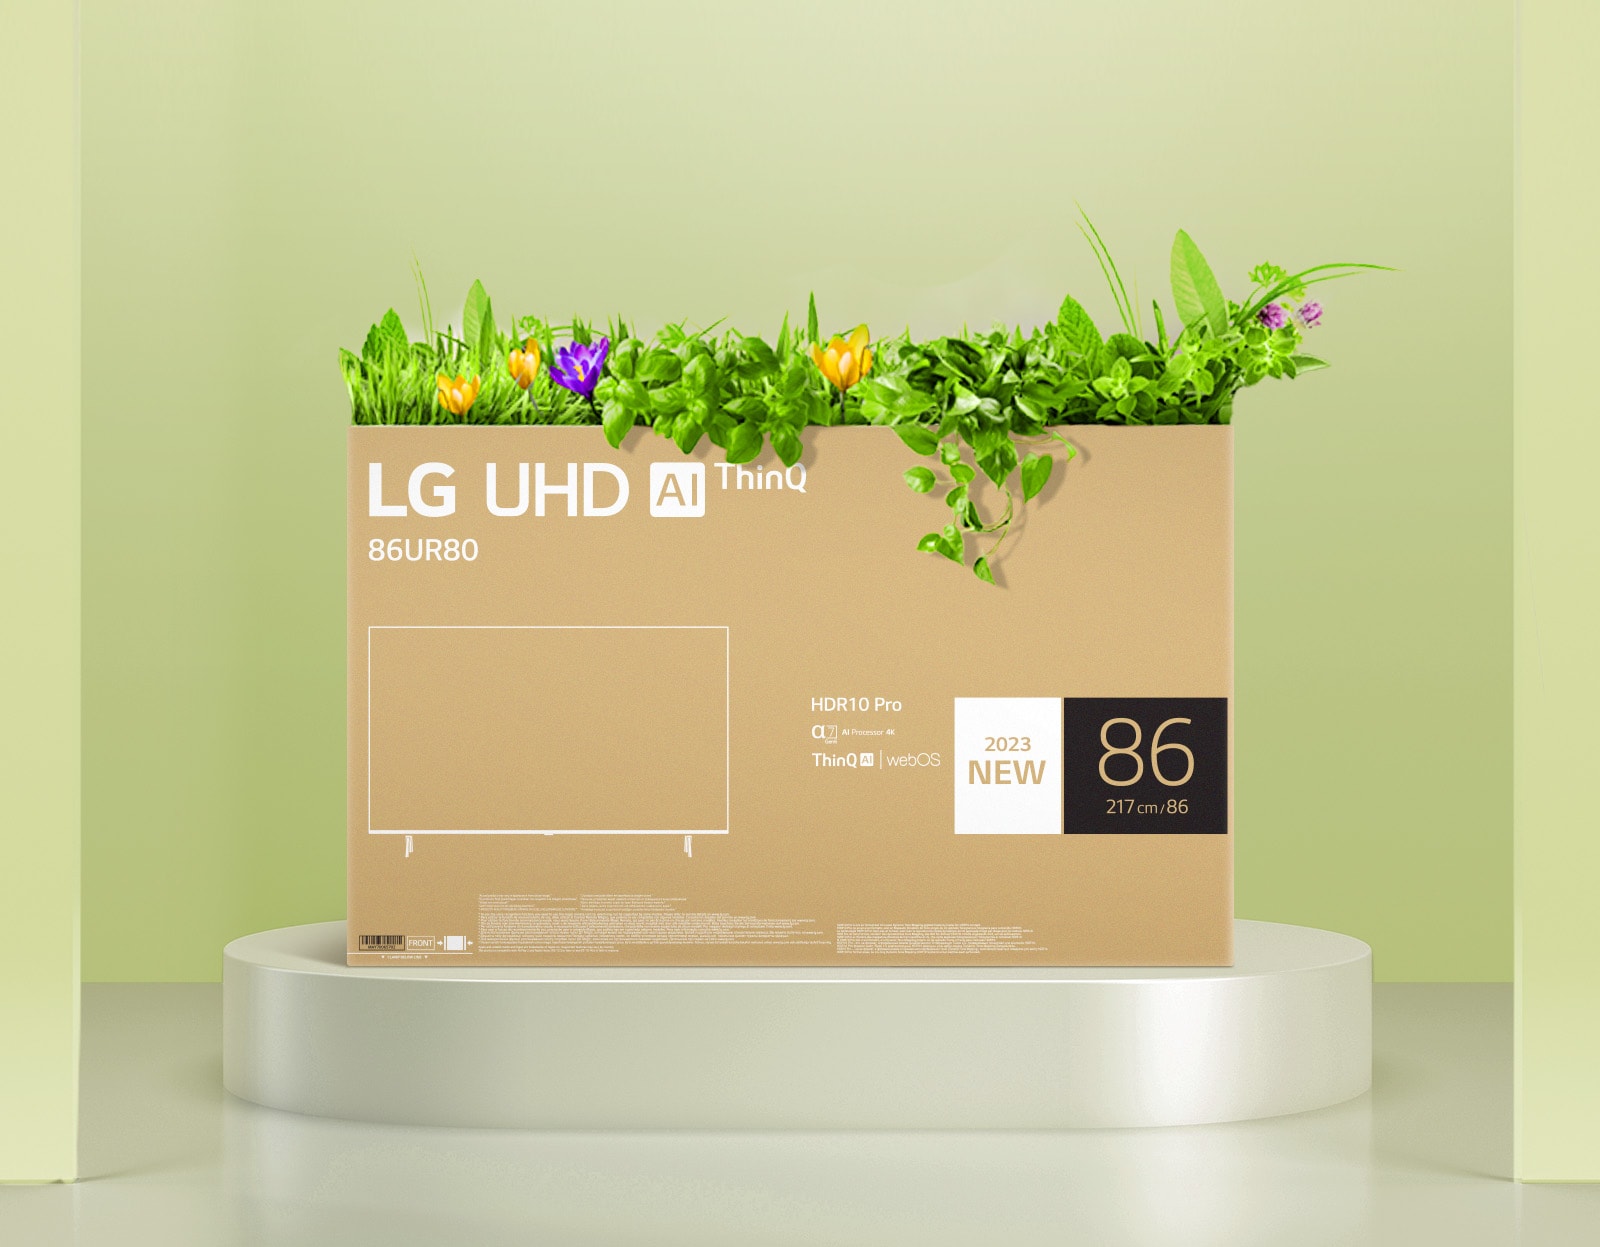 Pantalla LED LG 65 Pulgadas UHD 4K Smart 65UR7800PSB